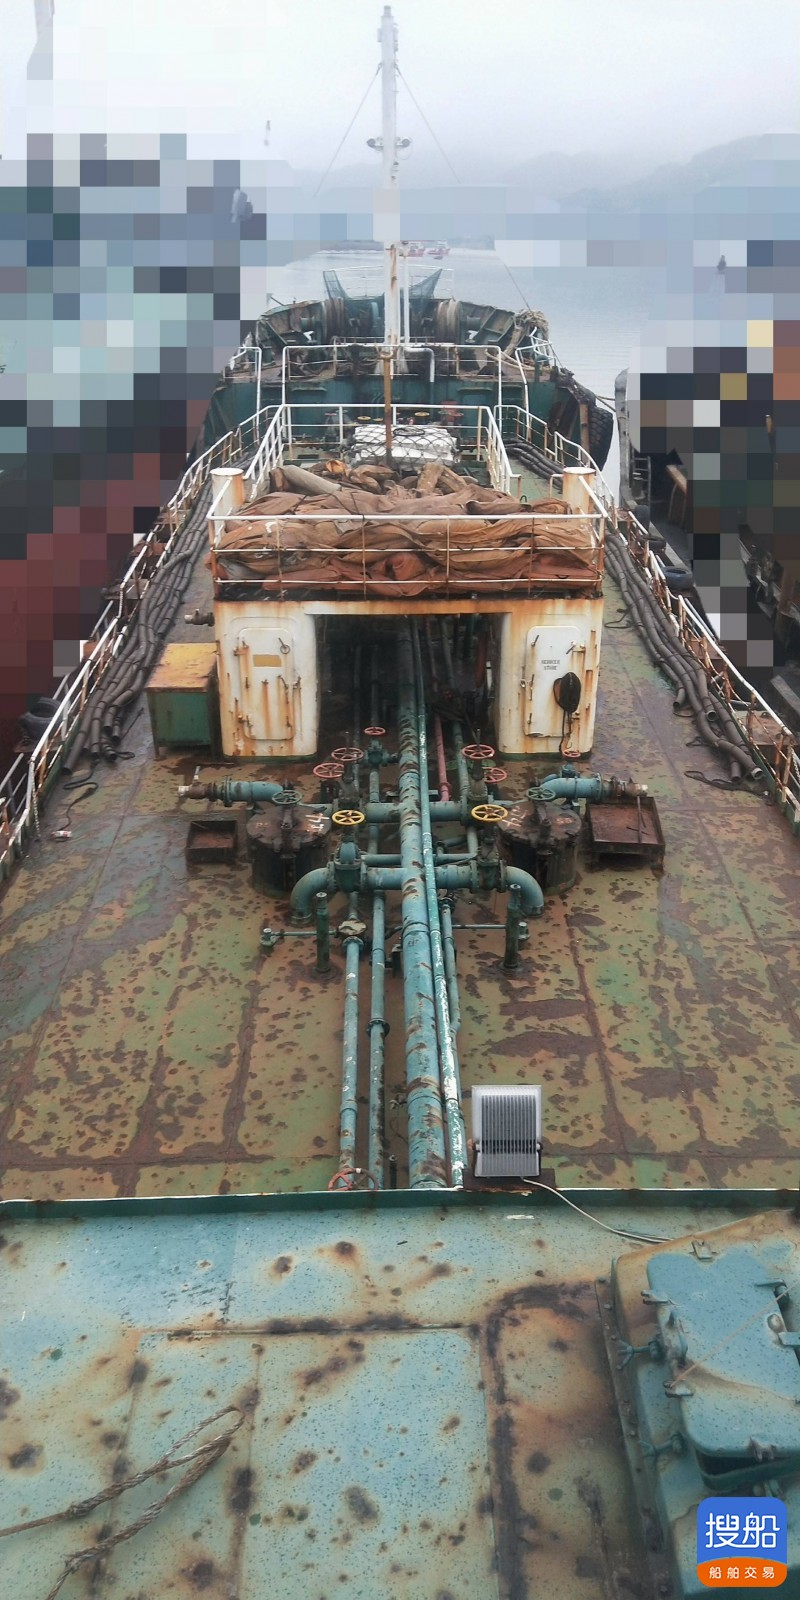 出售:1300吨 日本无证油船